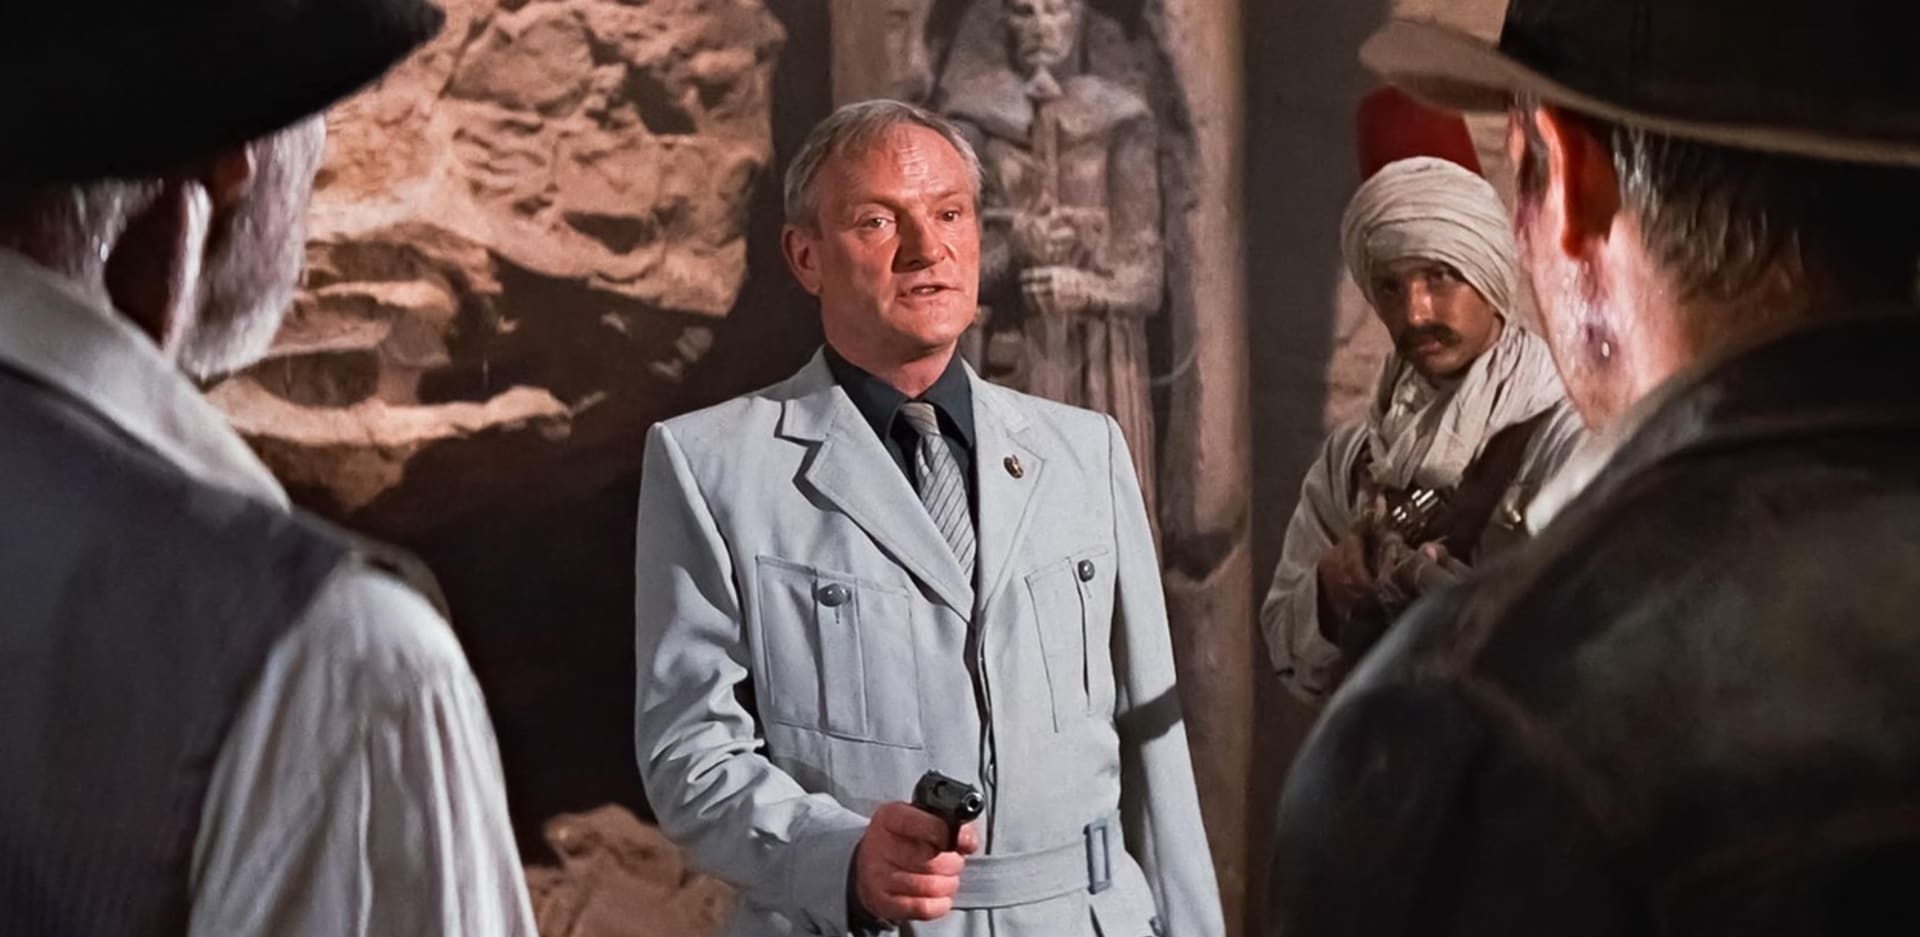 Jednou z nejvýznamnějších rolí byl pro Glovera (uprostřed) Walter Donovan, hlavní záporák filmu Indiana Jones a poslední křížová výprava. Zde si zahrál po boku Harrisona Forda i Seana Conneryho.